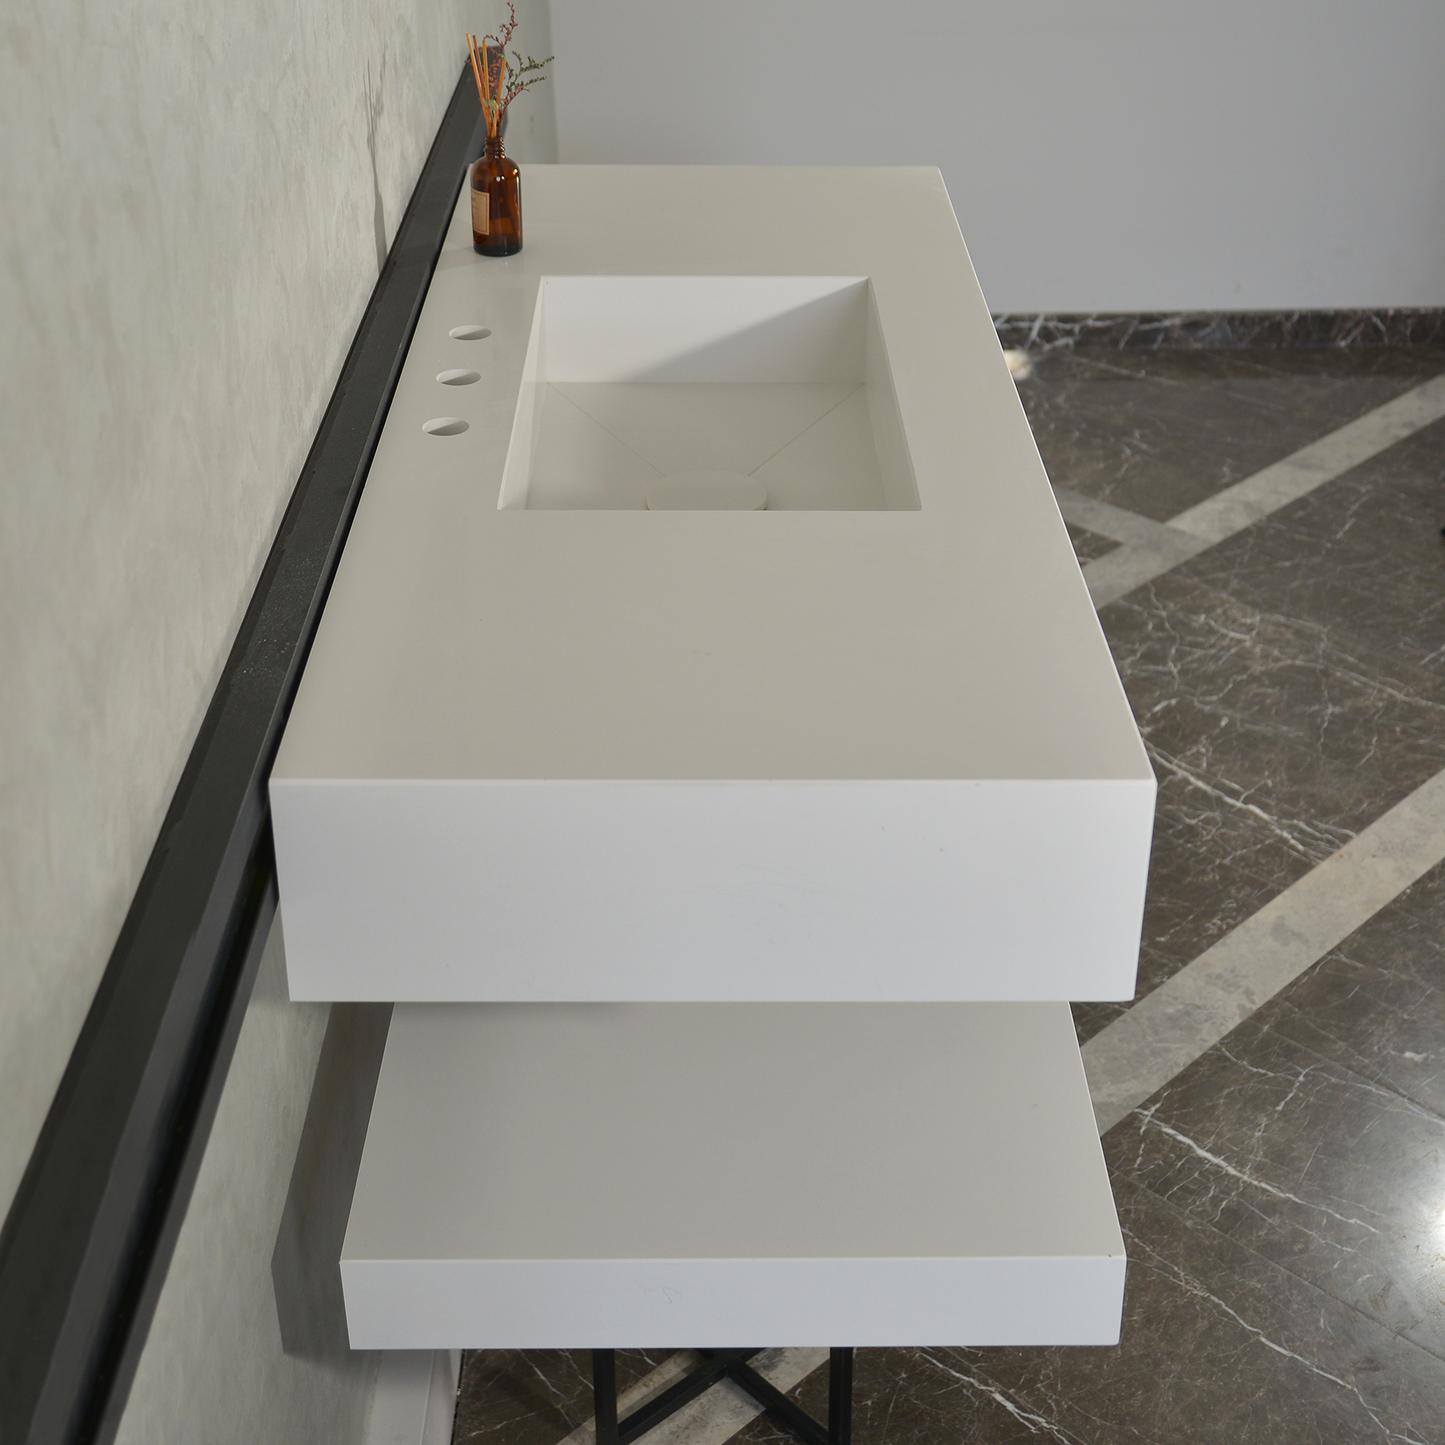 Custom Quartz Sink With Shelf, Bathroom Sink With Matching Shelf, Bathroom Vanity With Shelf, Bathroom Vanity With Single Sink, Vessel